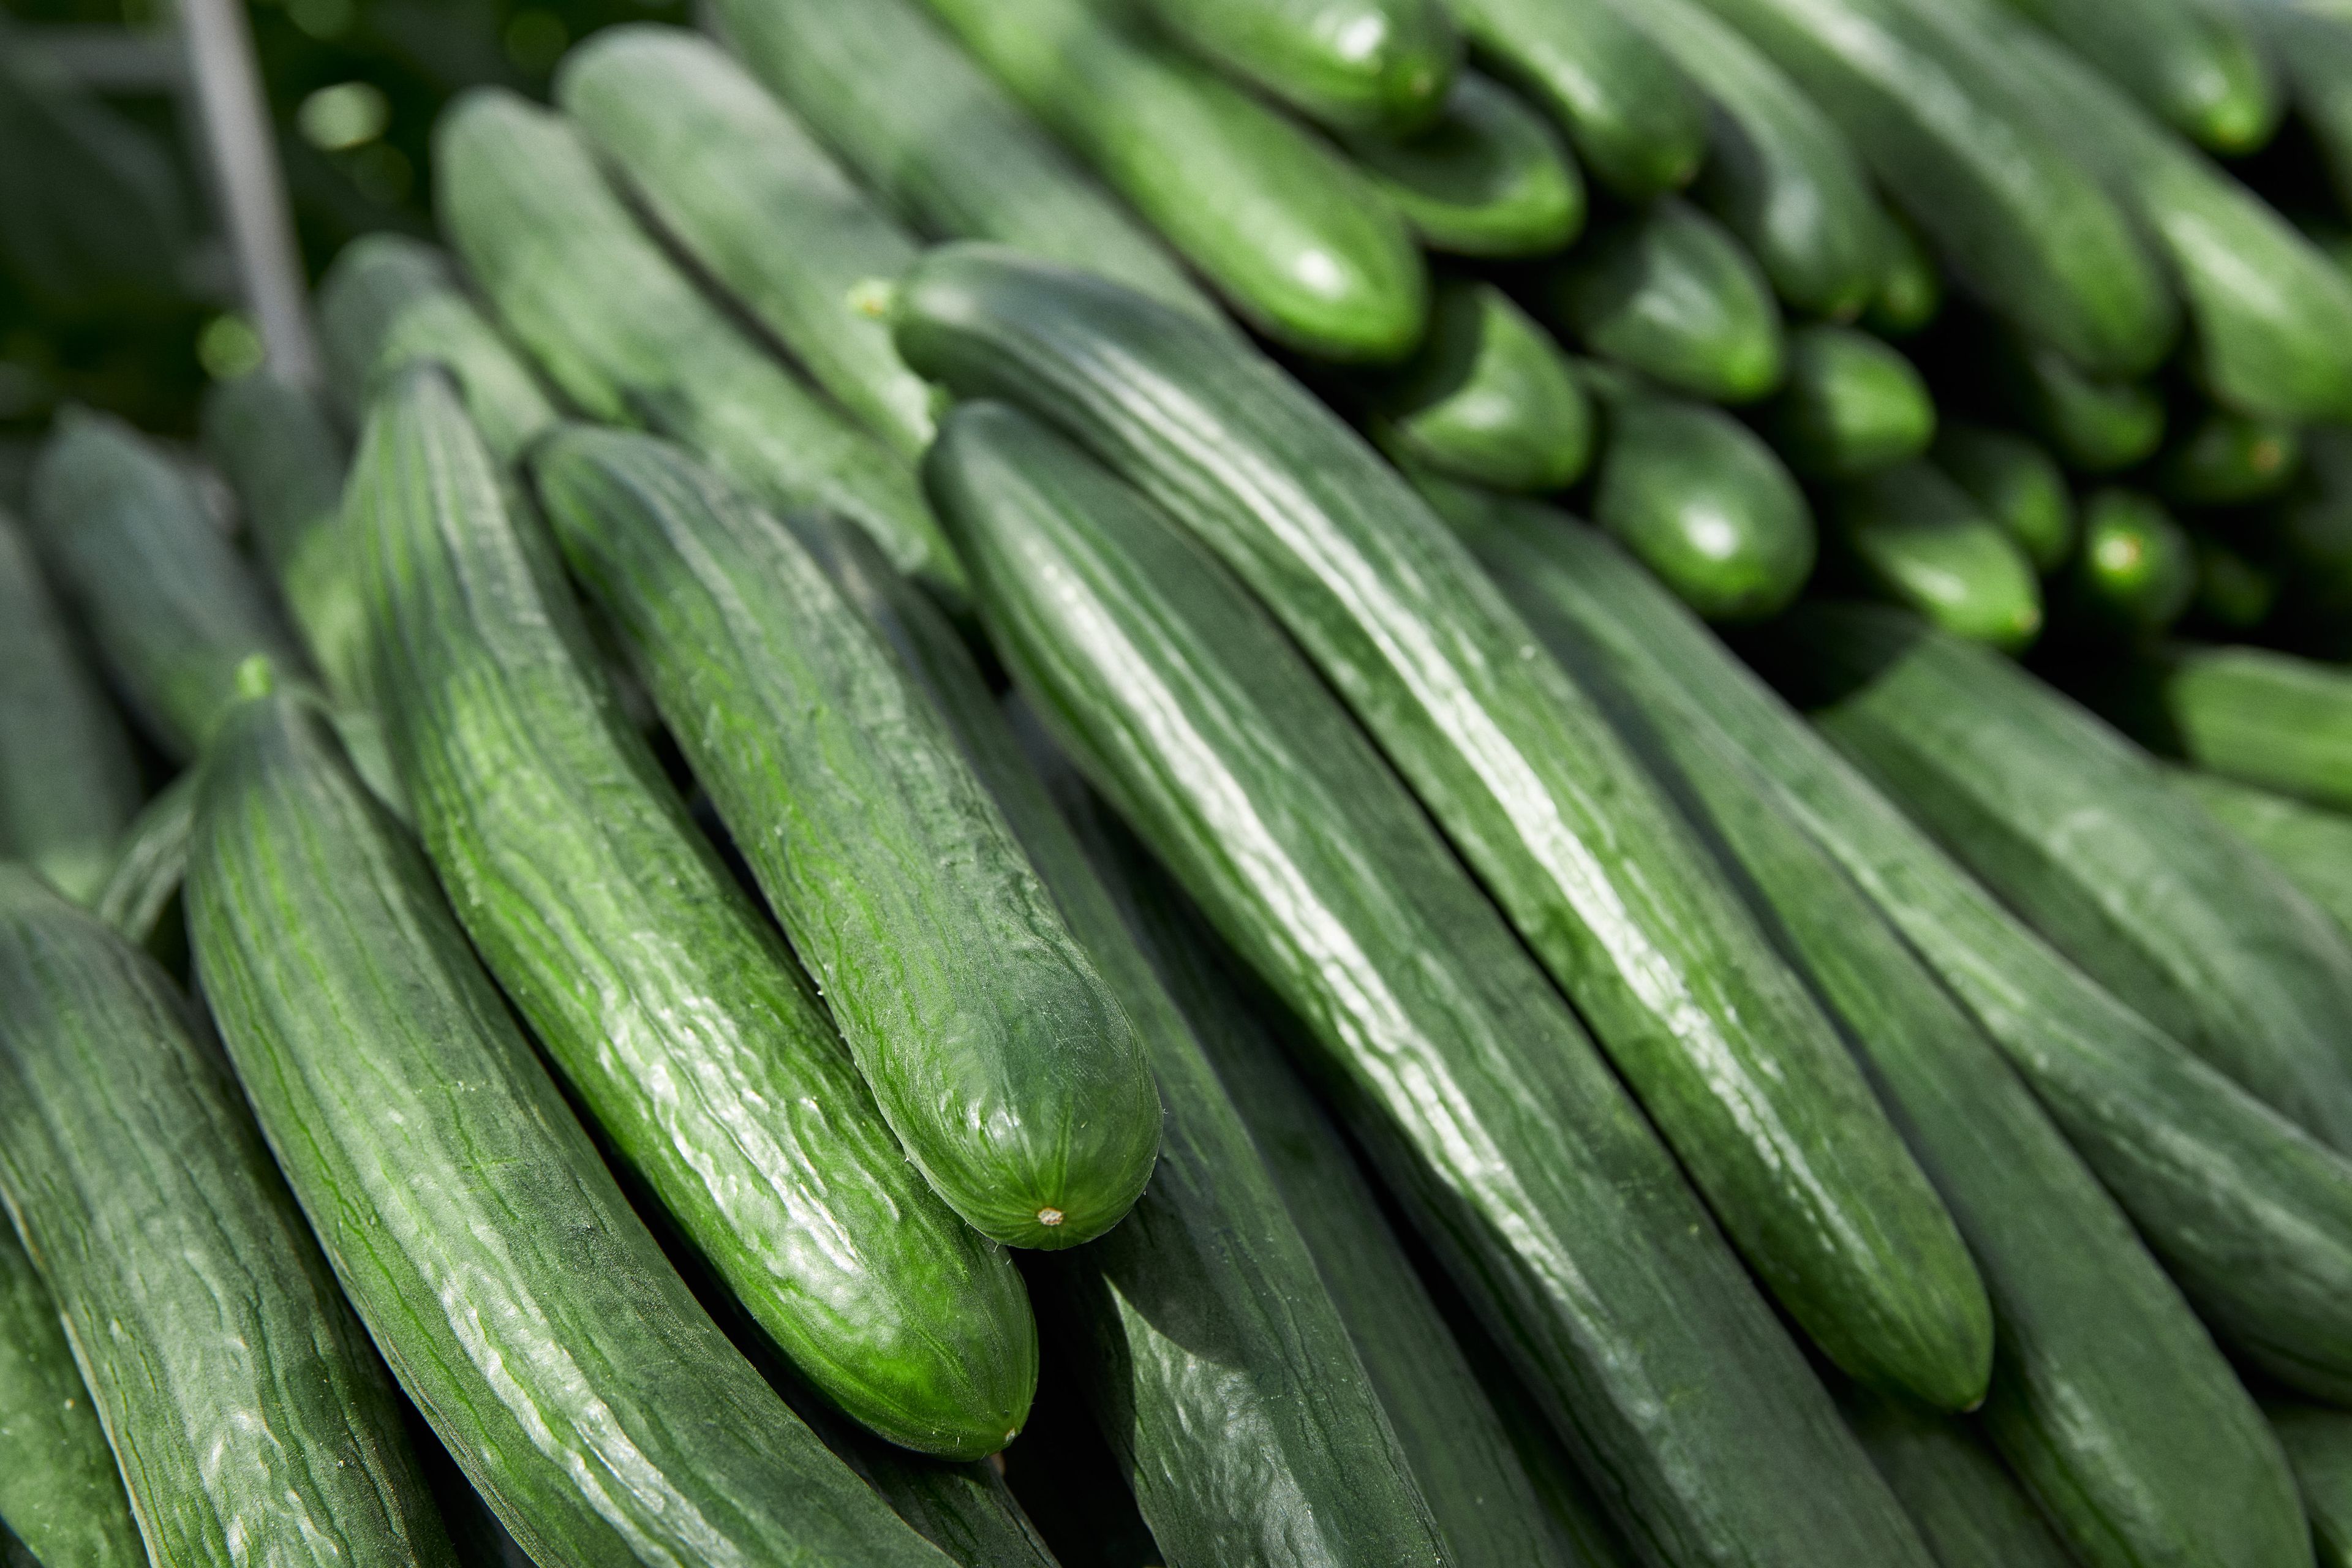  Opbevaring af agurker: Sådan bevarer du friskhed og smag